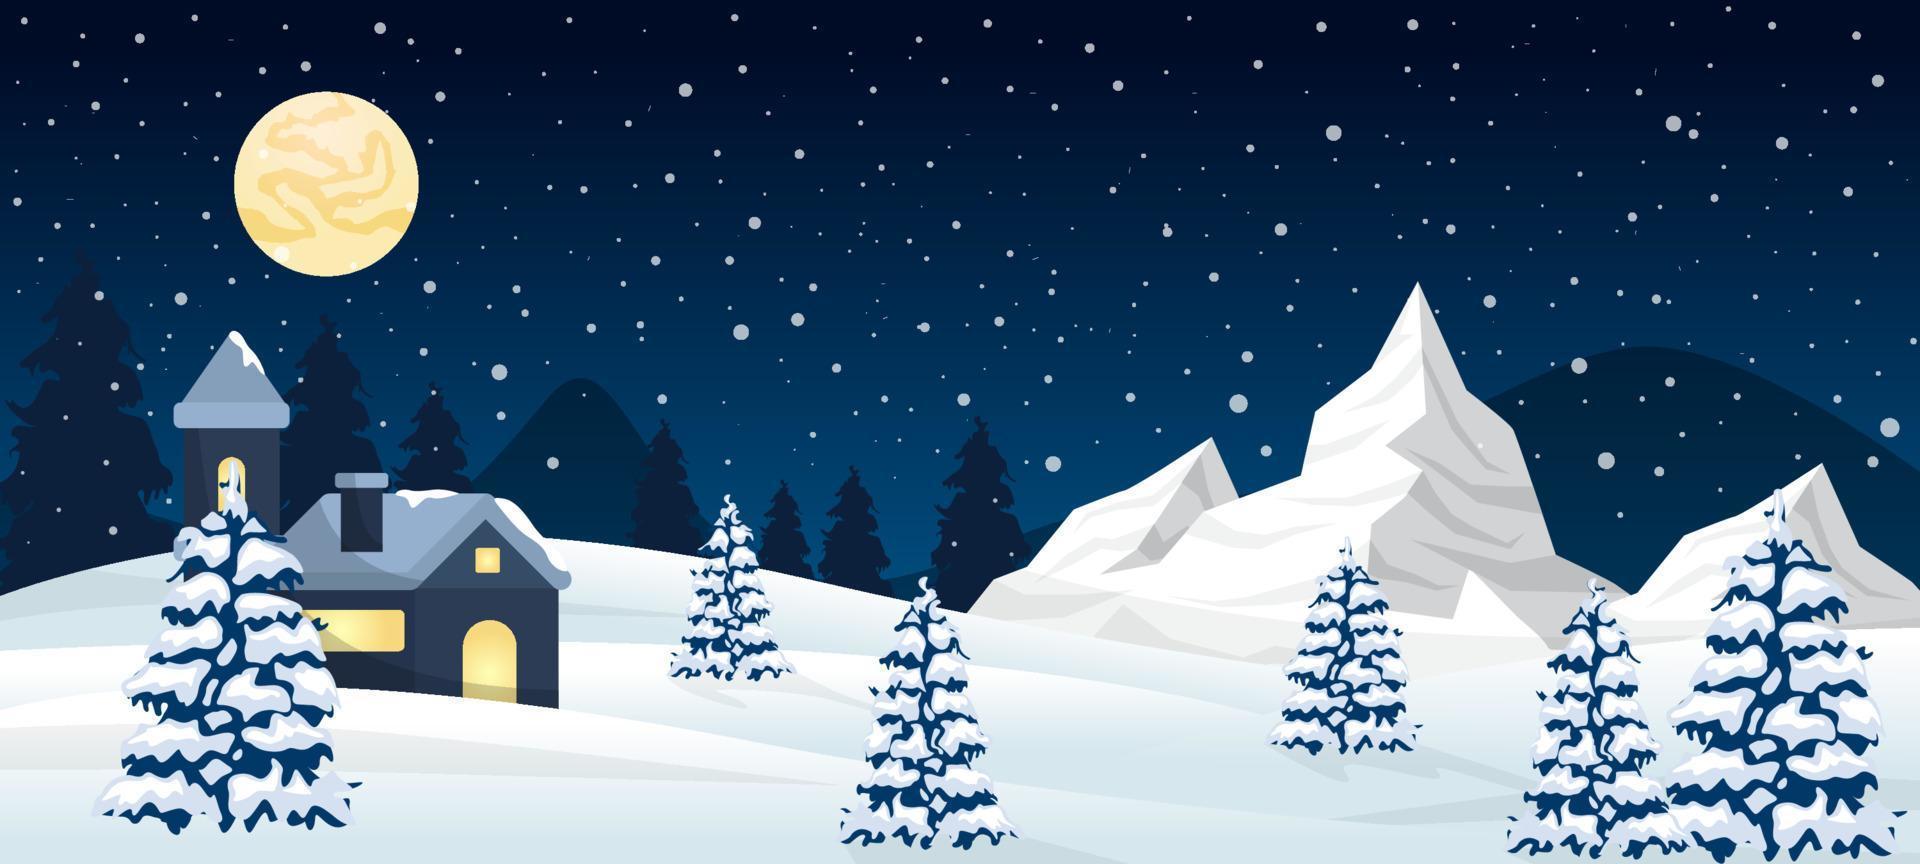 Winter Wonderland Background vector